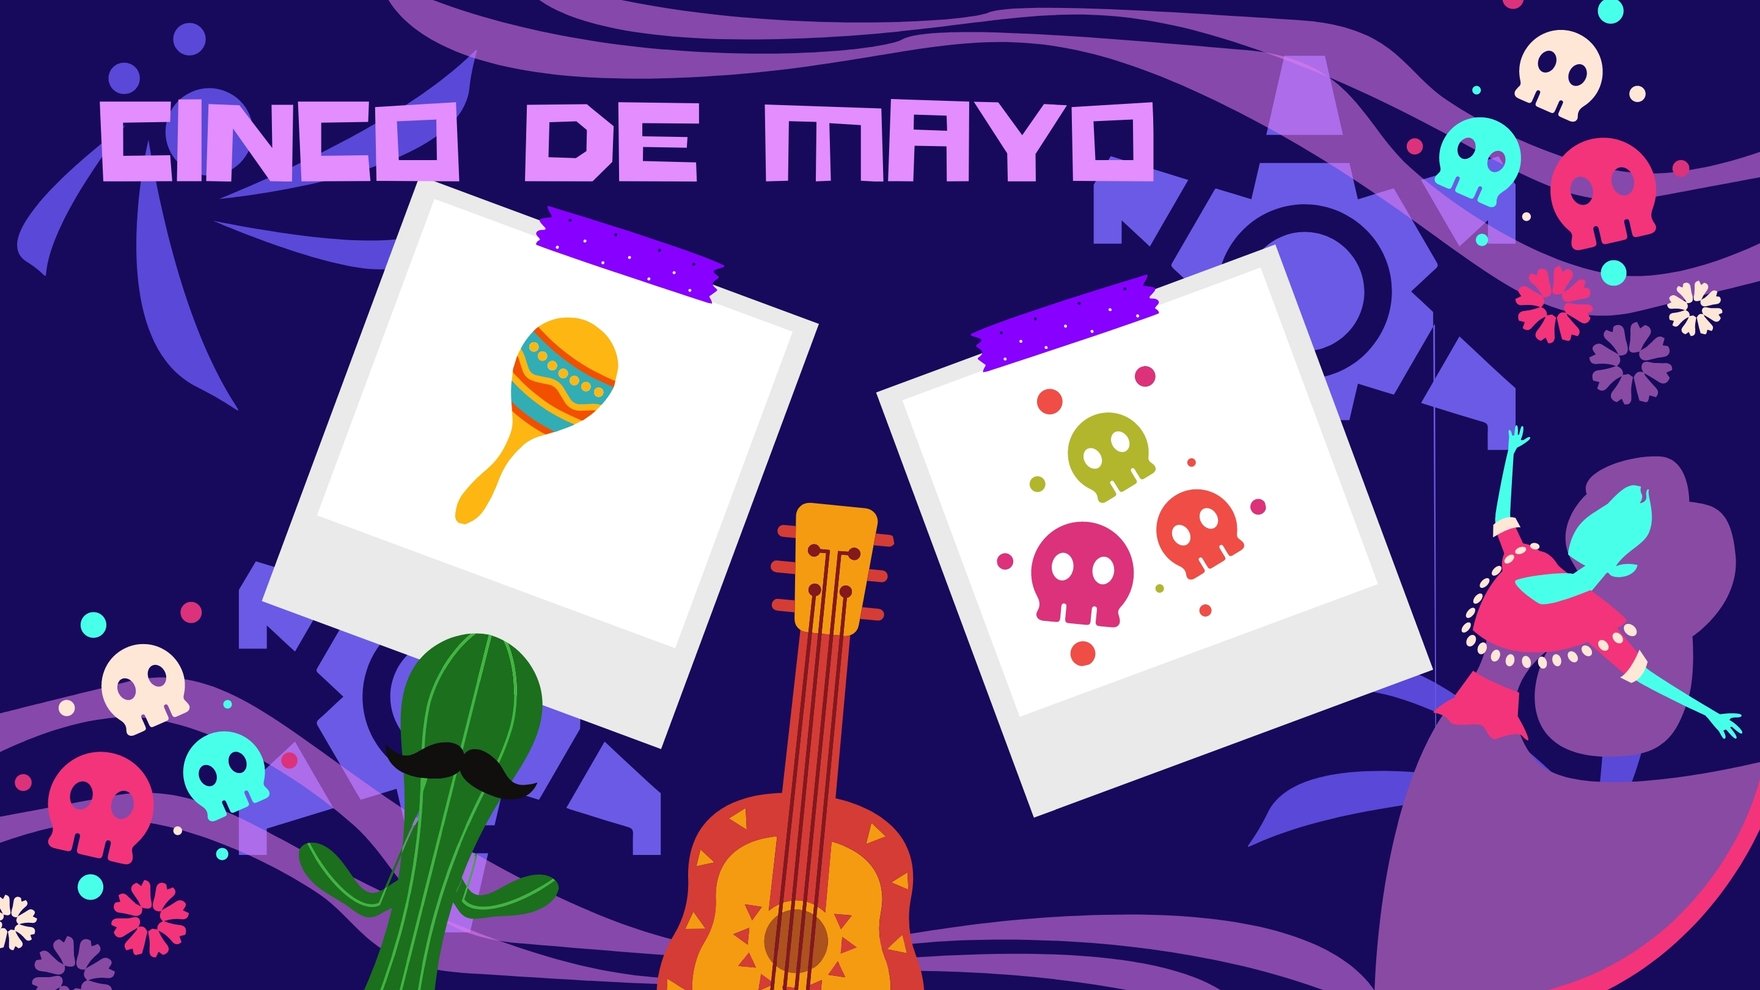 Cinco de Mayo Image Background in PDF, Illustrator, PSD, EPS, SVG, JPG, PNG